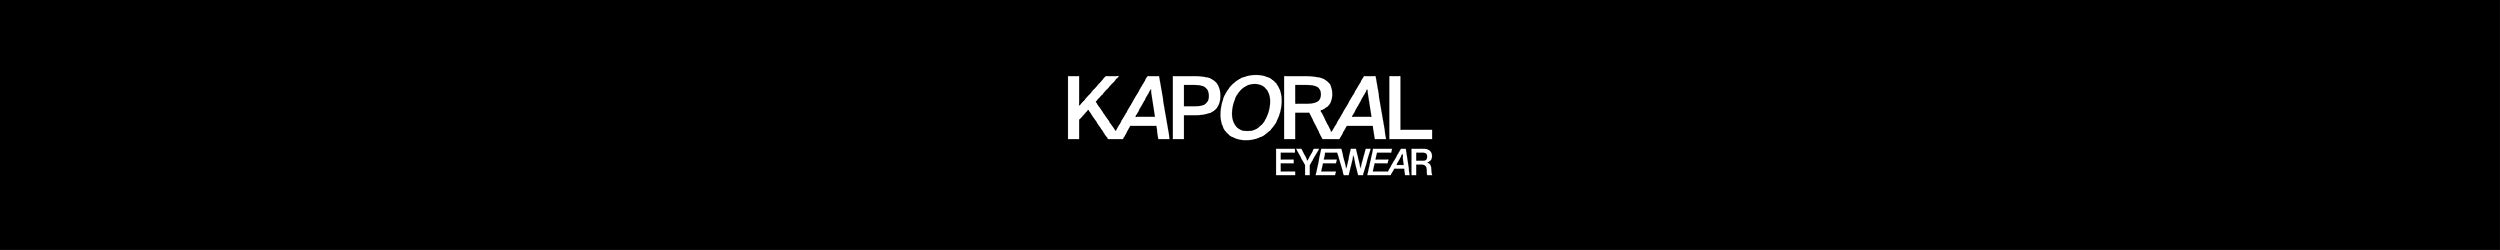 Kaporal Eyewear